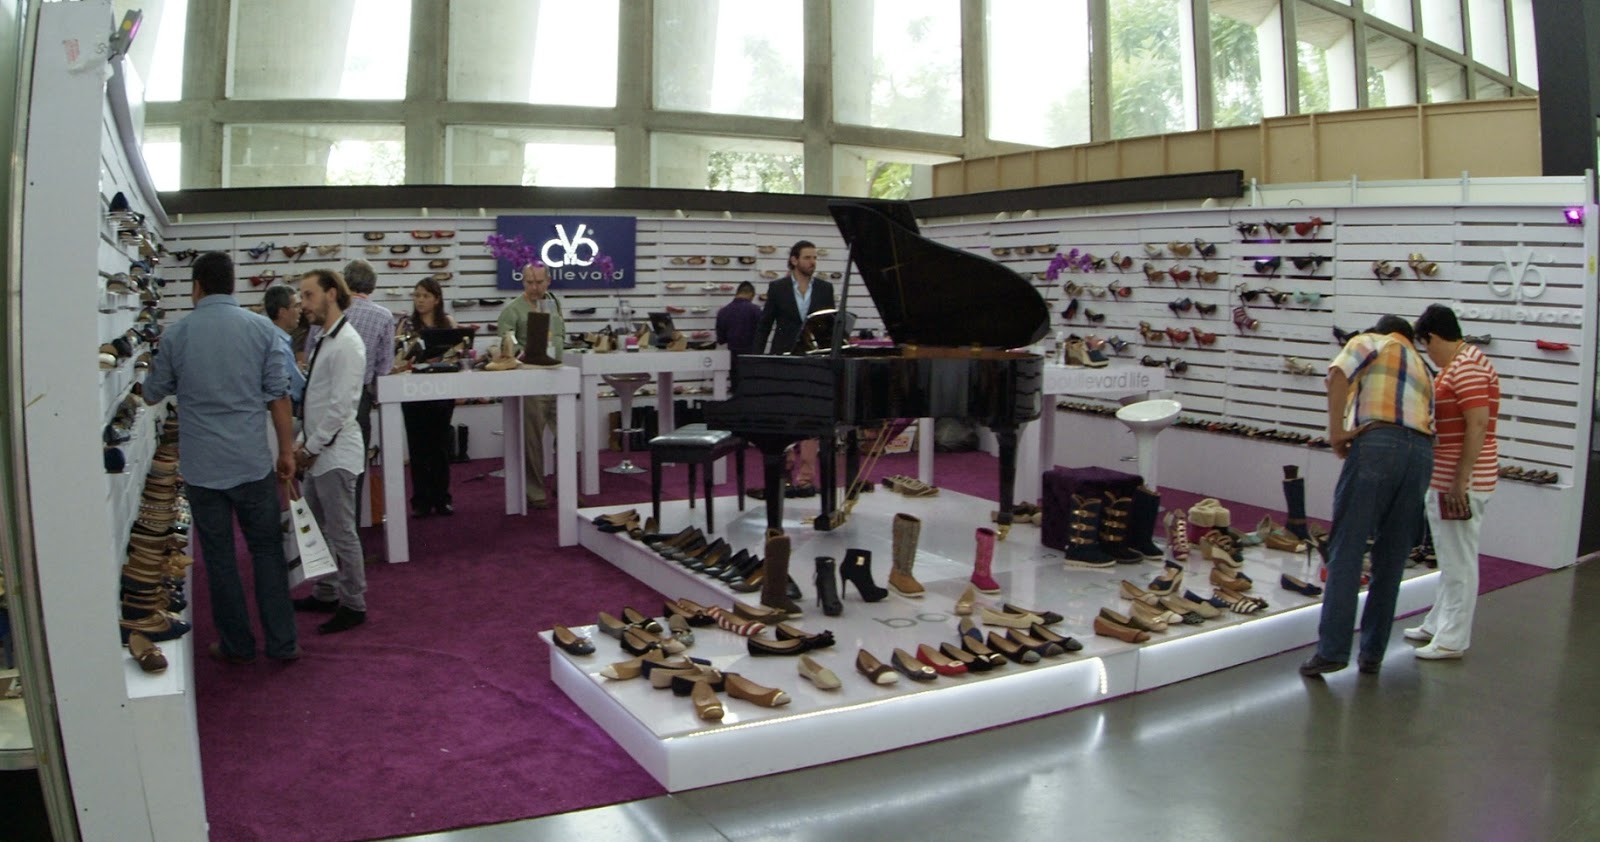 sapica agosto 2014, poliforum, exposición de calzado y artículos de piel, boullevard